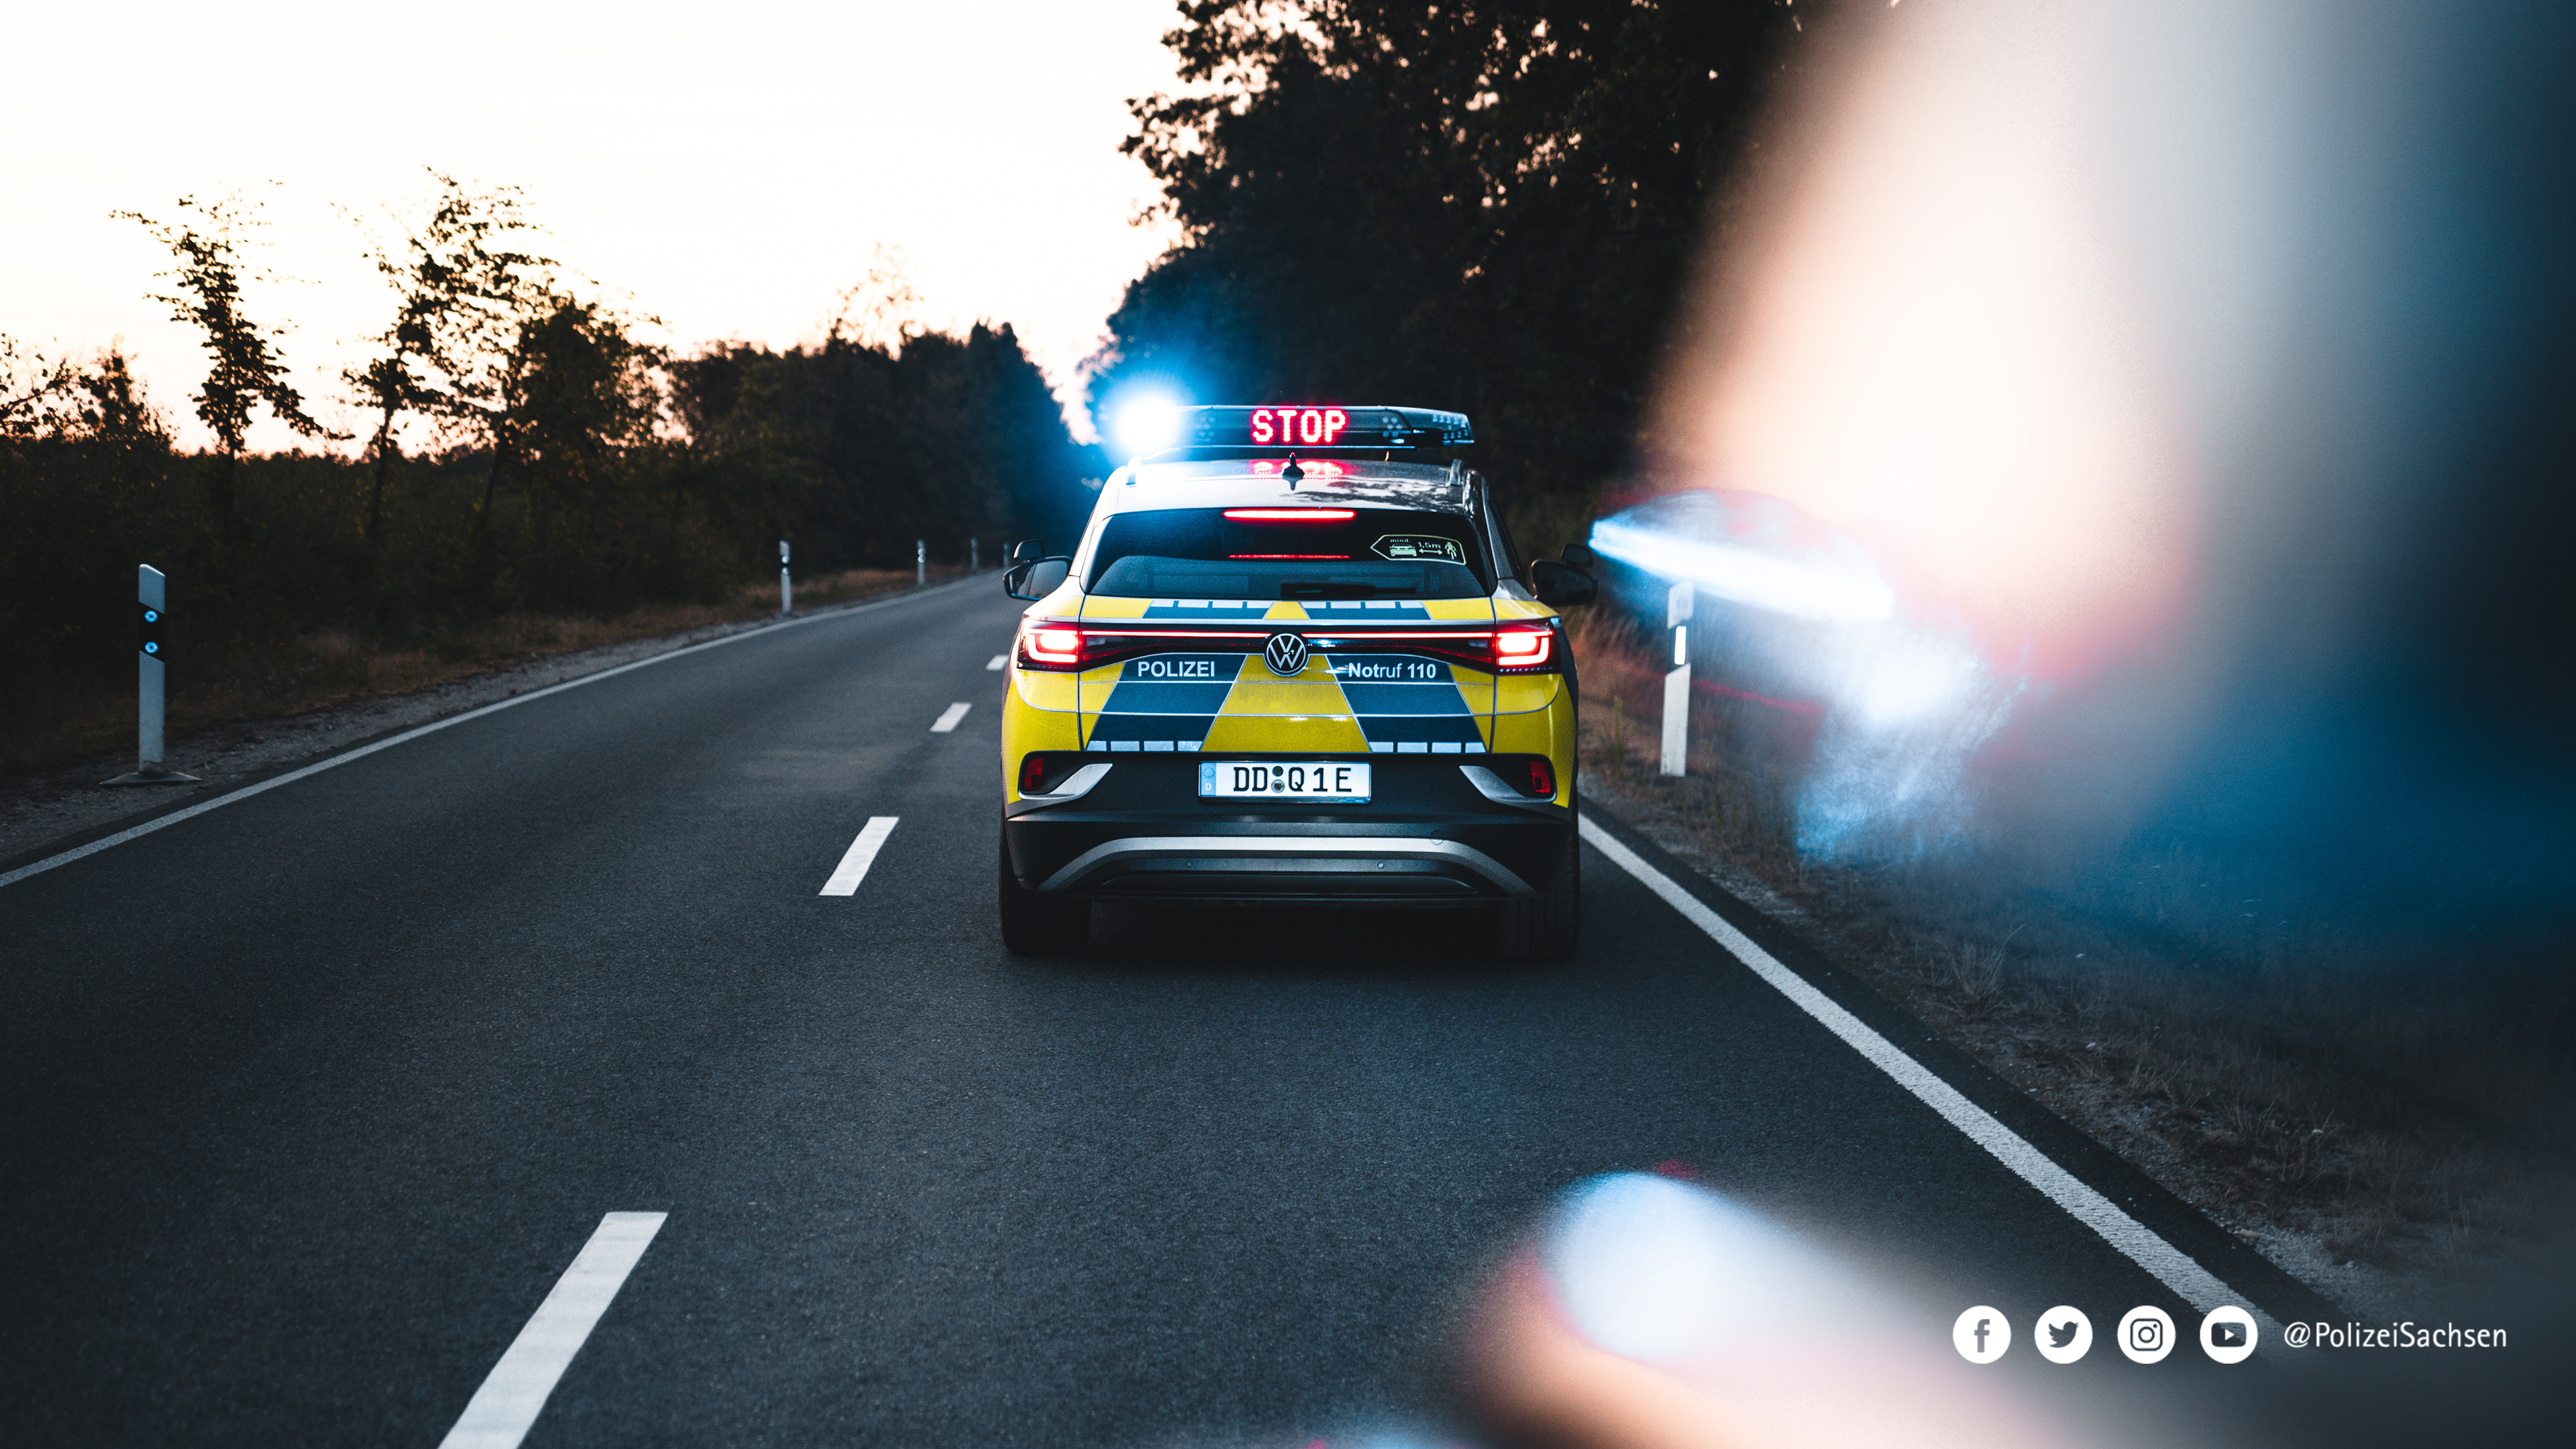 Ein Streifenwagen der Polizei Sachsen bei einer Verkehrskontrolle auf einer Landstraße. In der Sondersignalanlage ist der Begriff »Stop« eingeblendet.